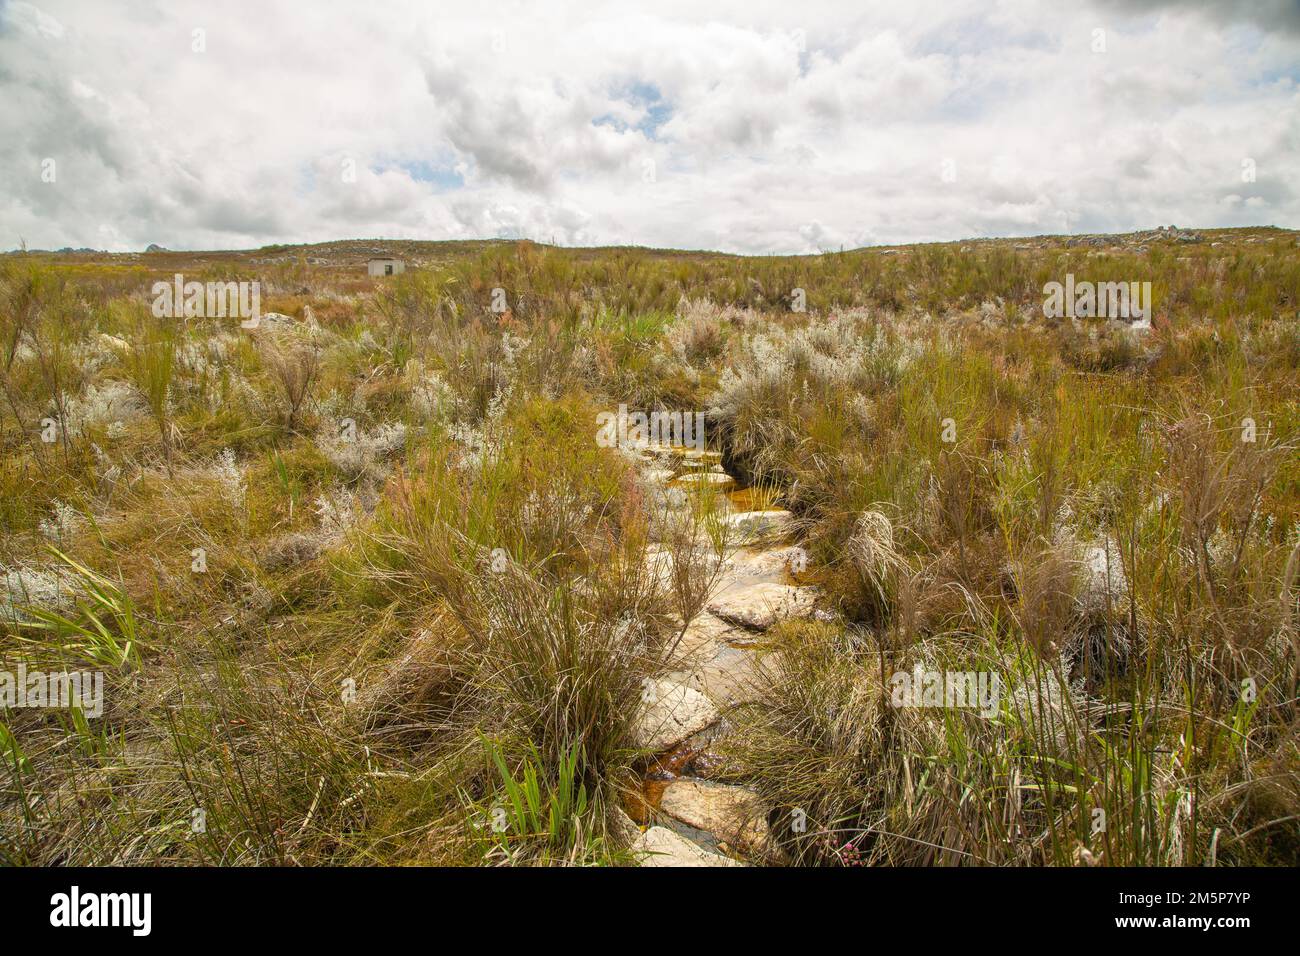 Petite piste de randonnée construite en pierres dans les montagnes du Cap occidental de l'Afrique du Sud Banque D'Images